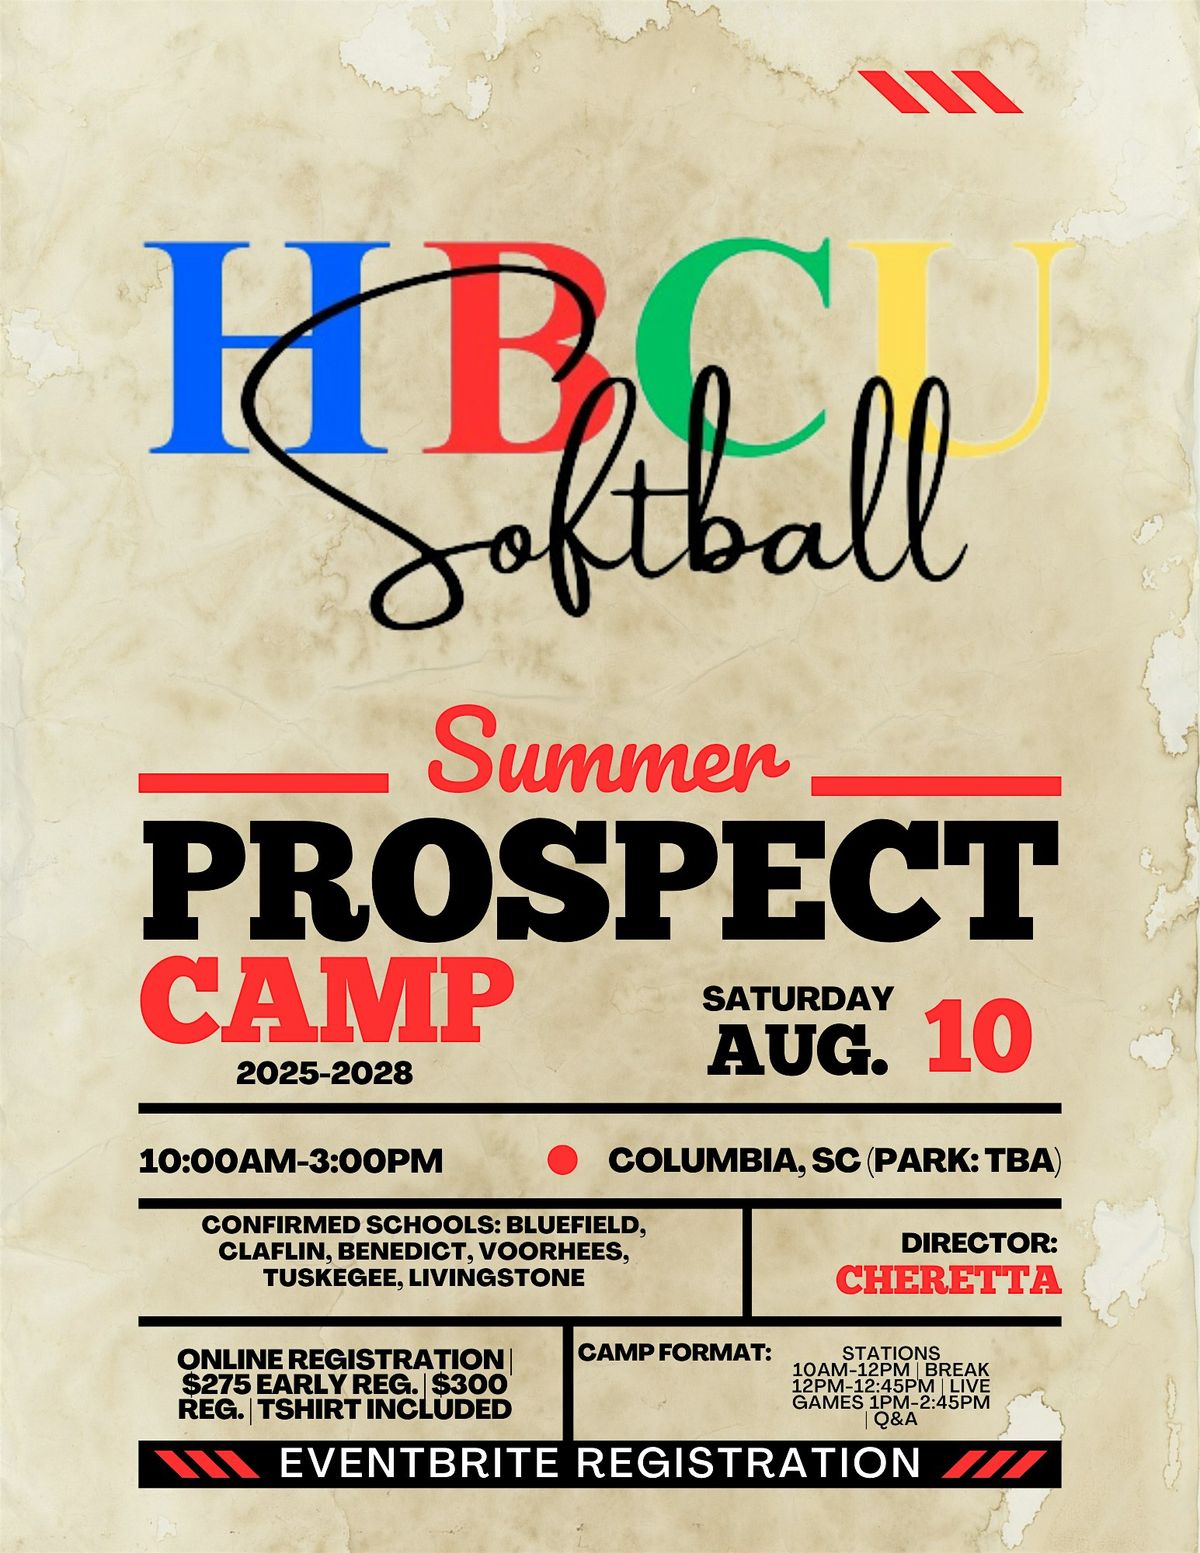 2nd Annual HBCU Softball Prospect Camp